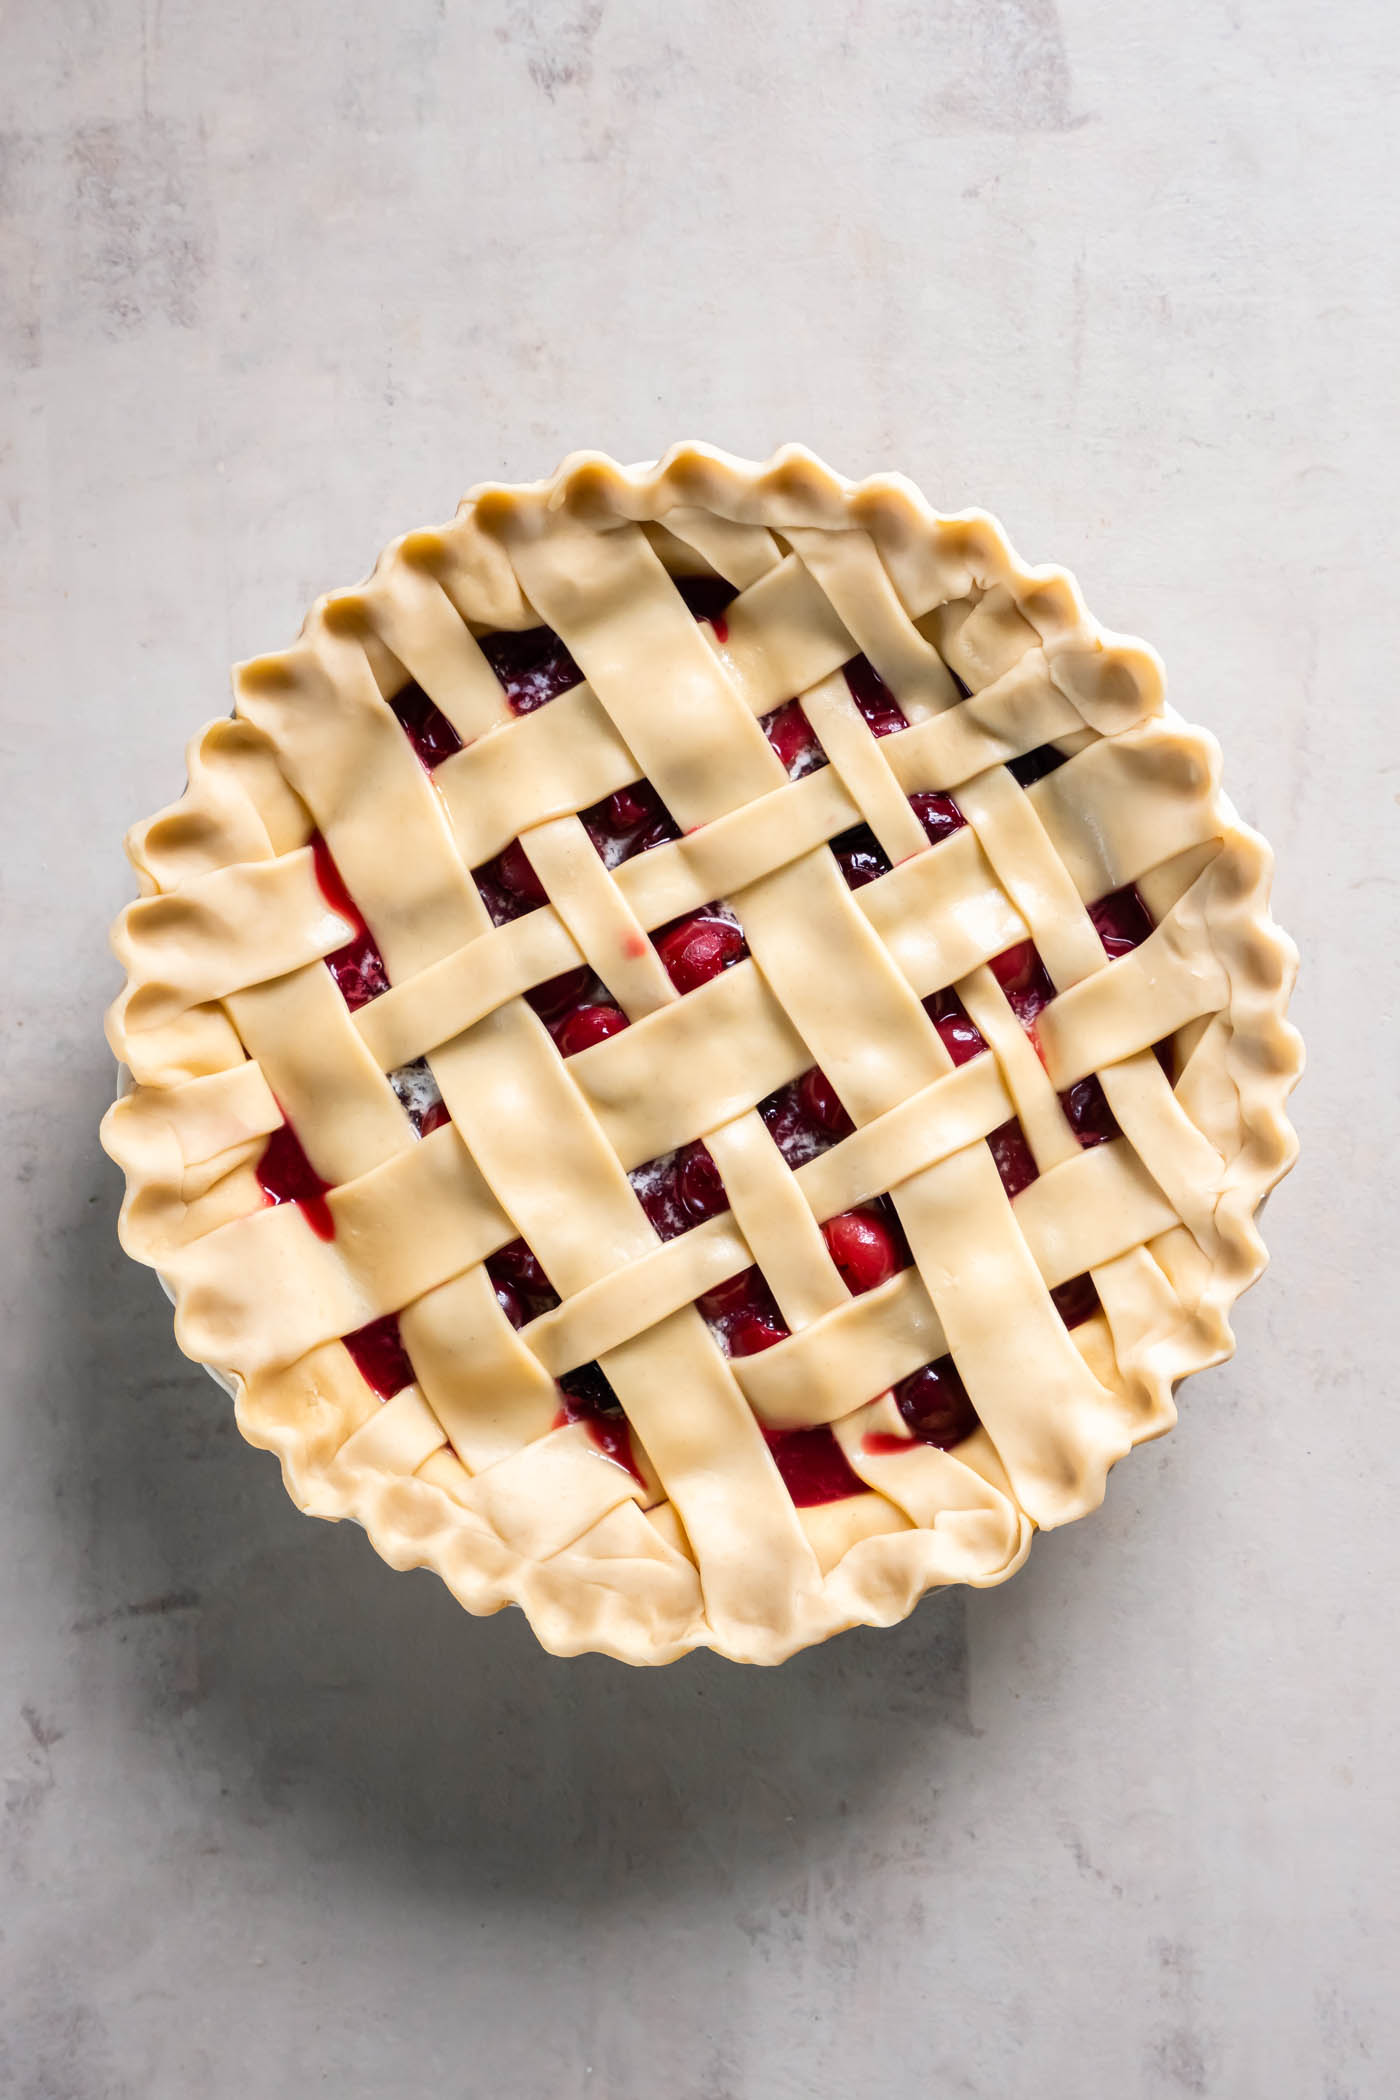 Unbaked cherry pie with lattice crust.